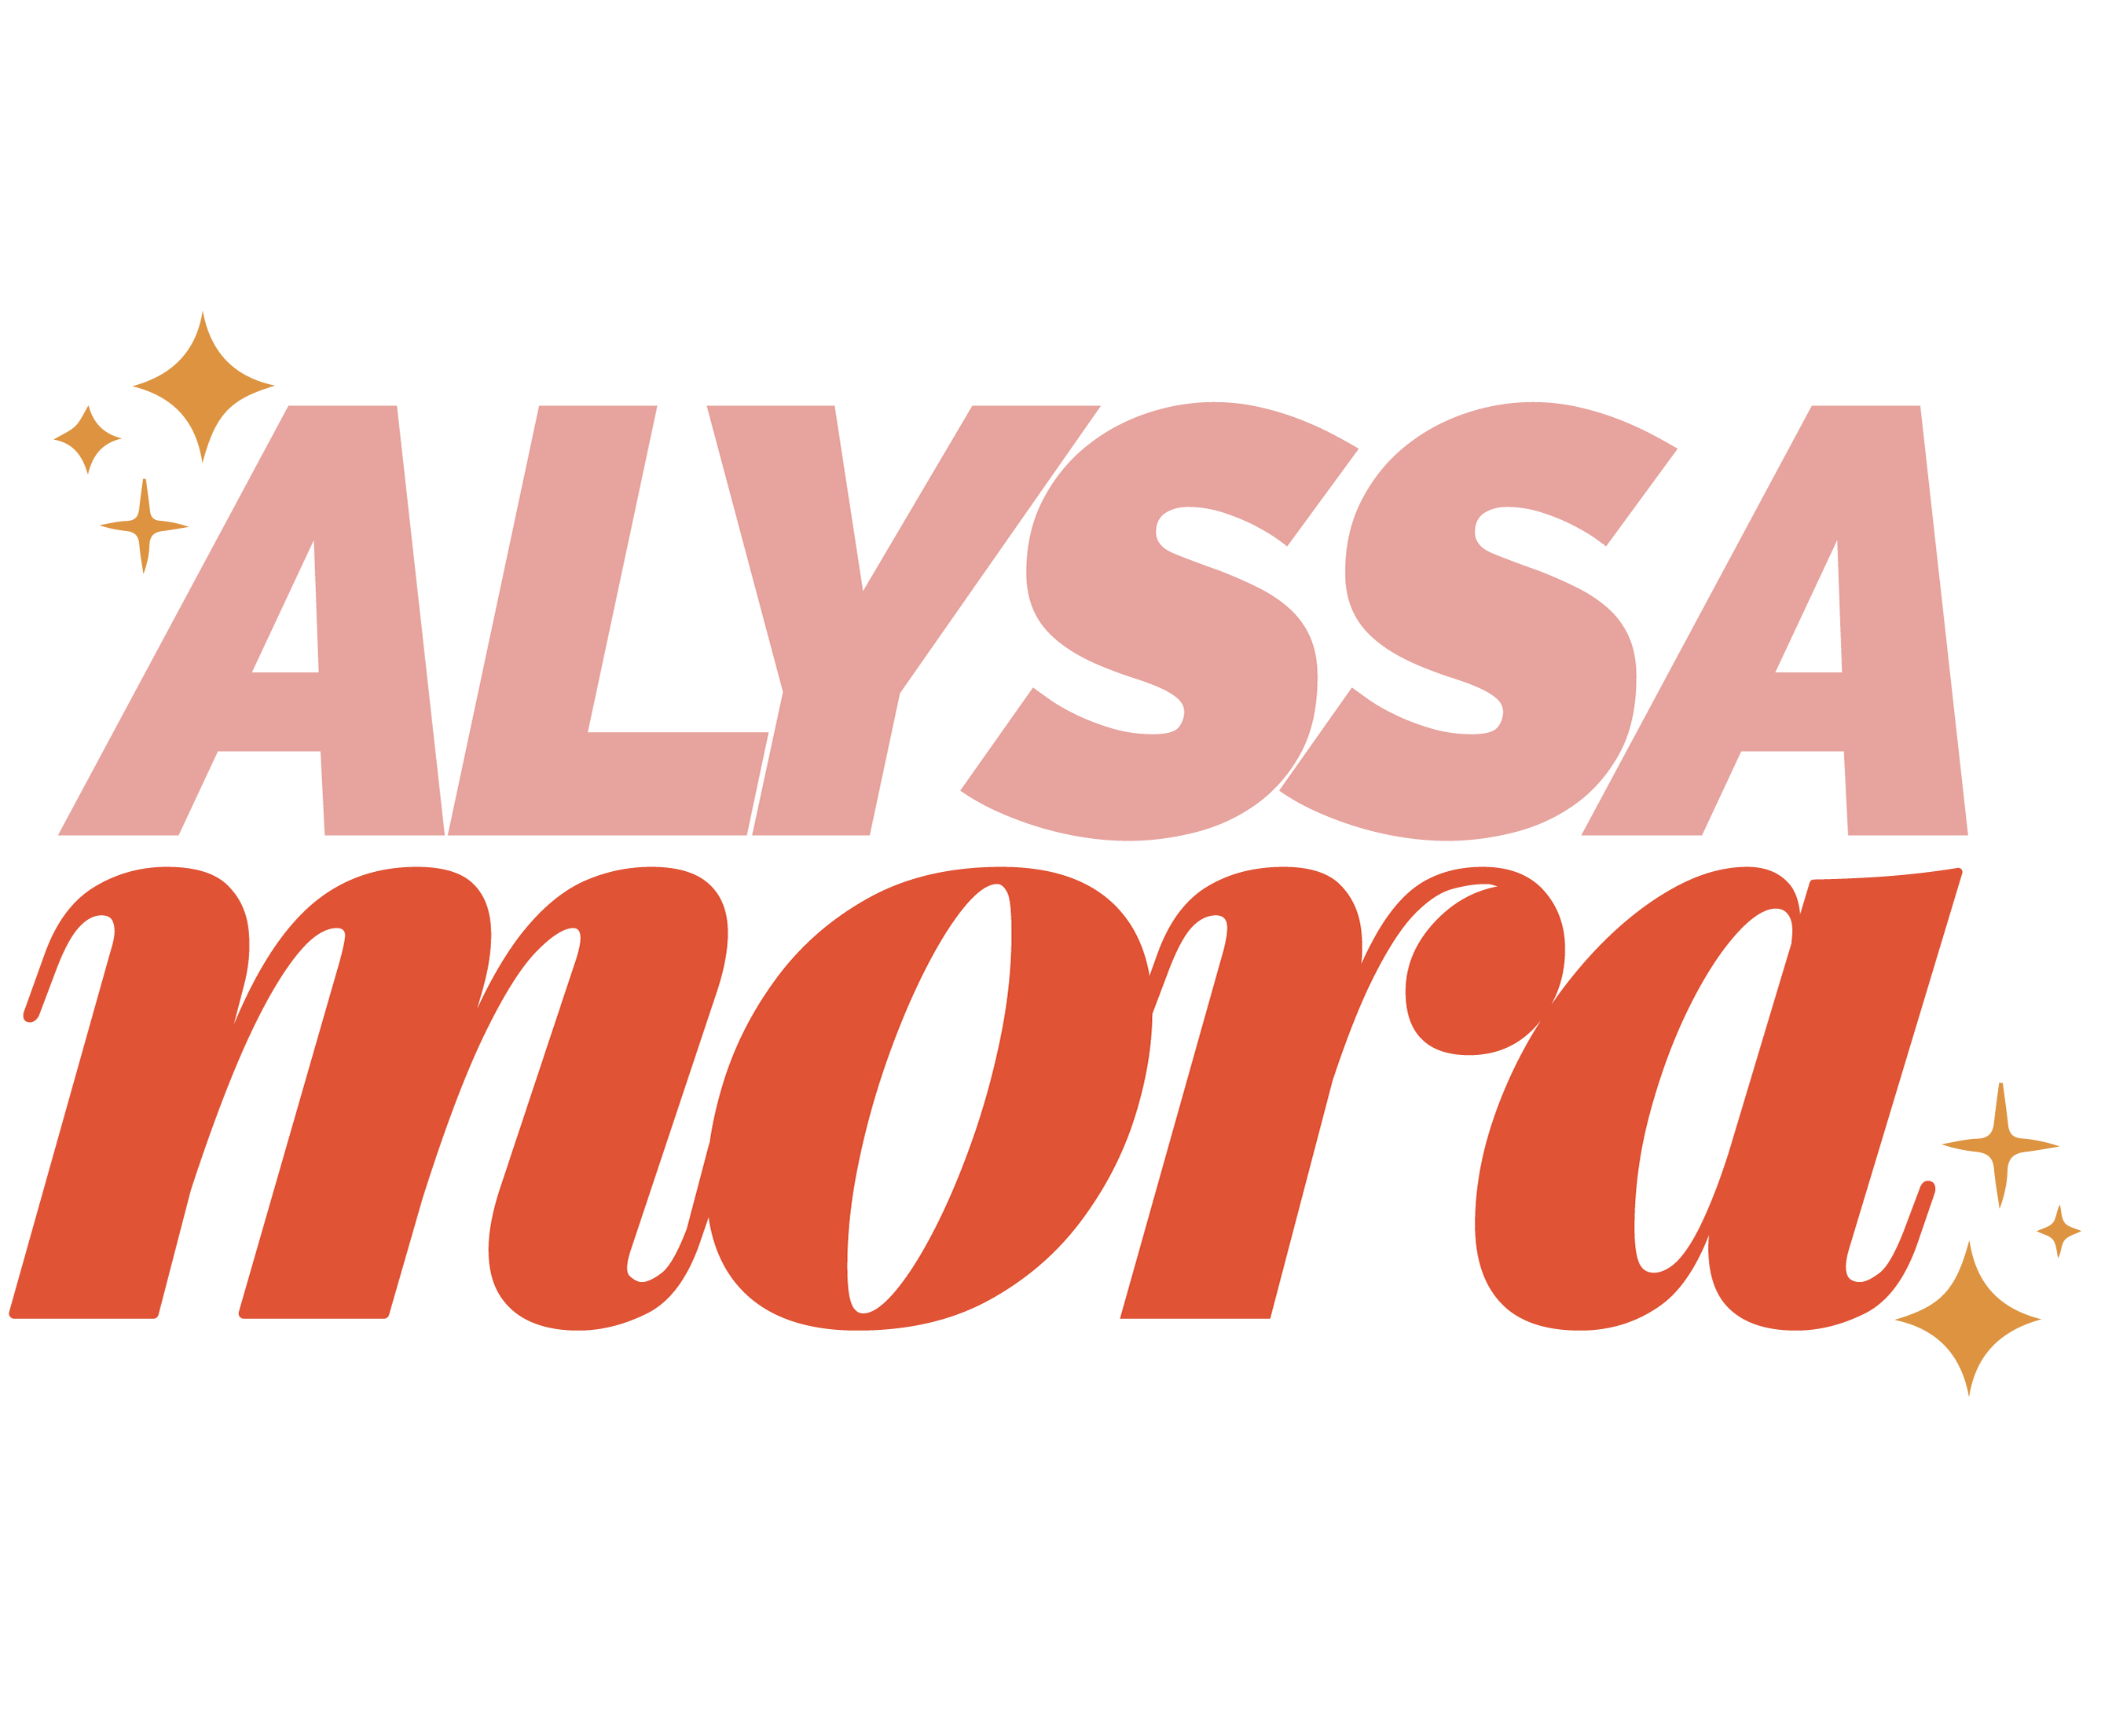 Alyssa Mora